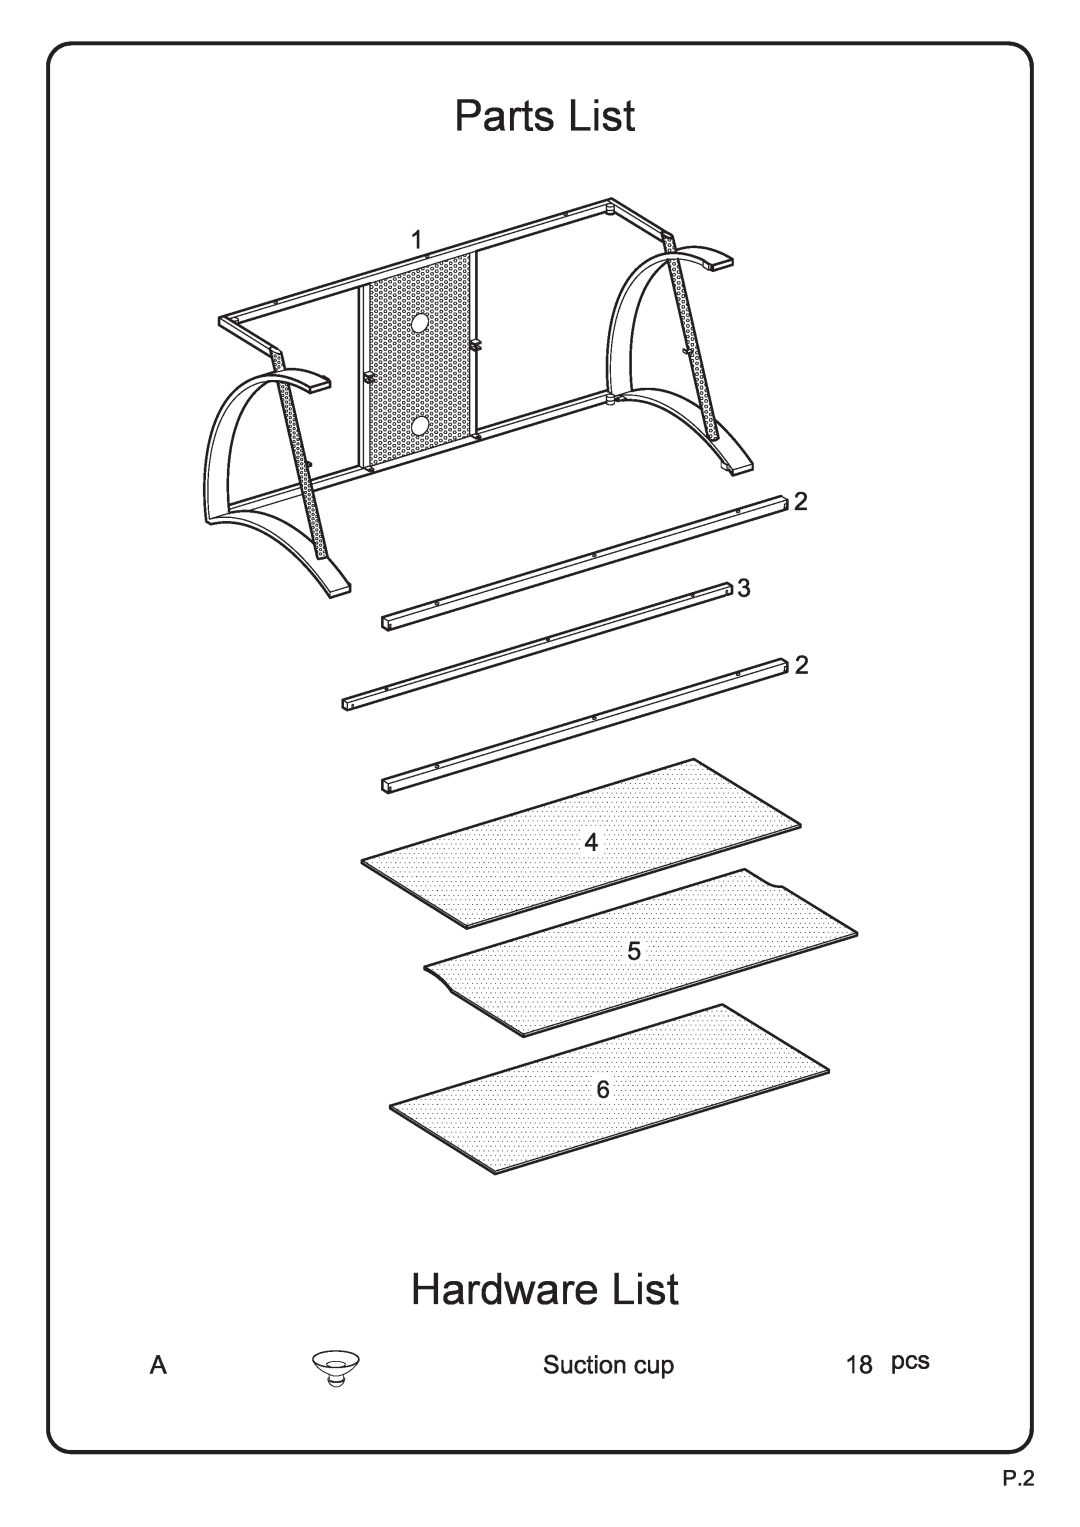 Walker V42GBB manual Parts List, Hardware List 